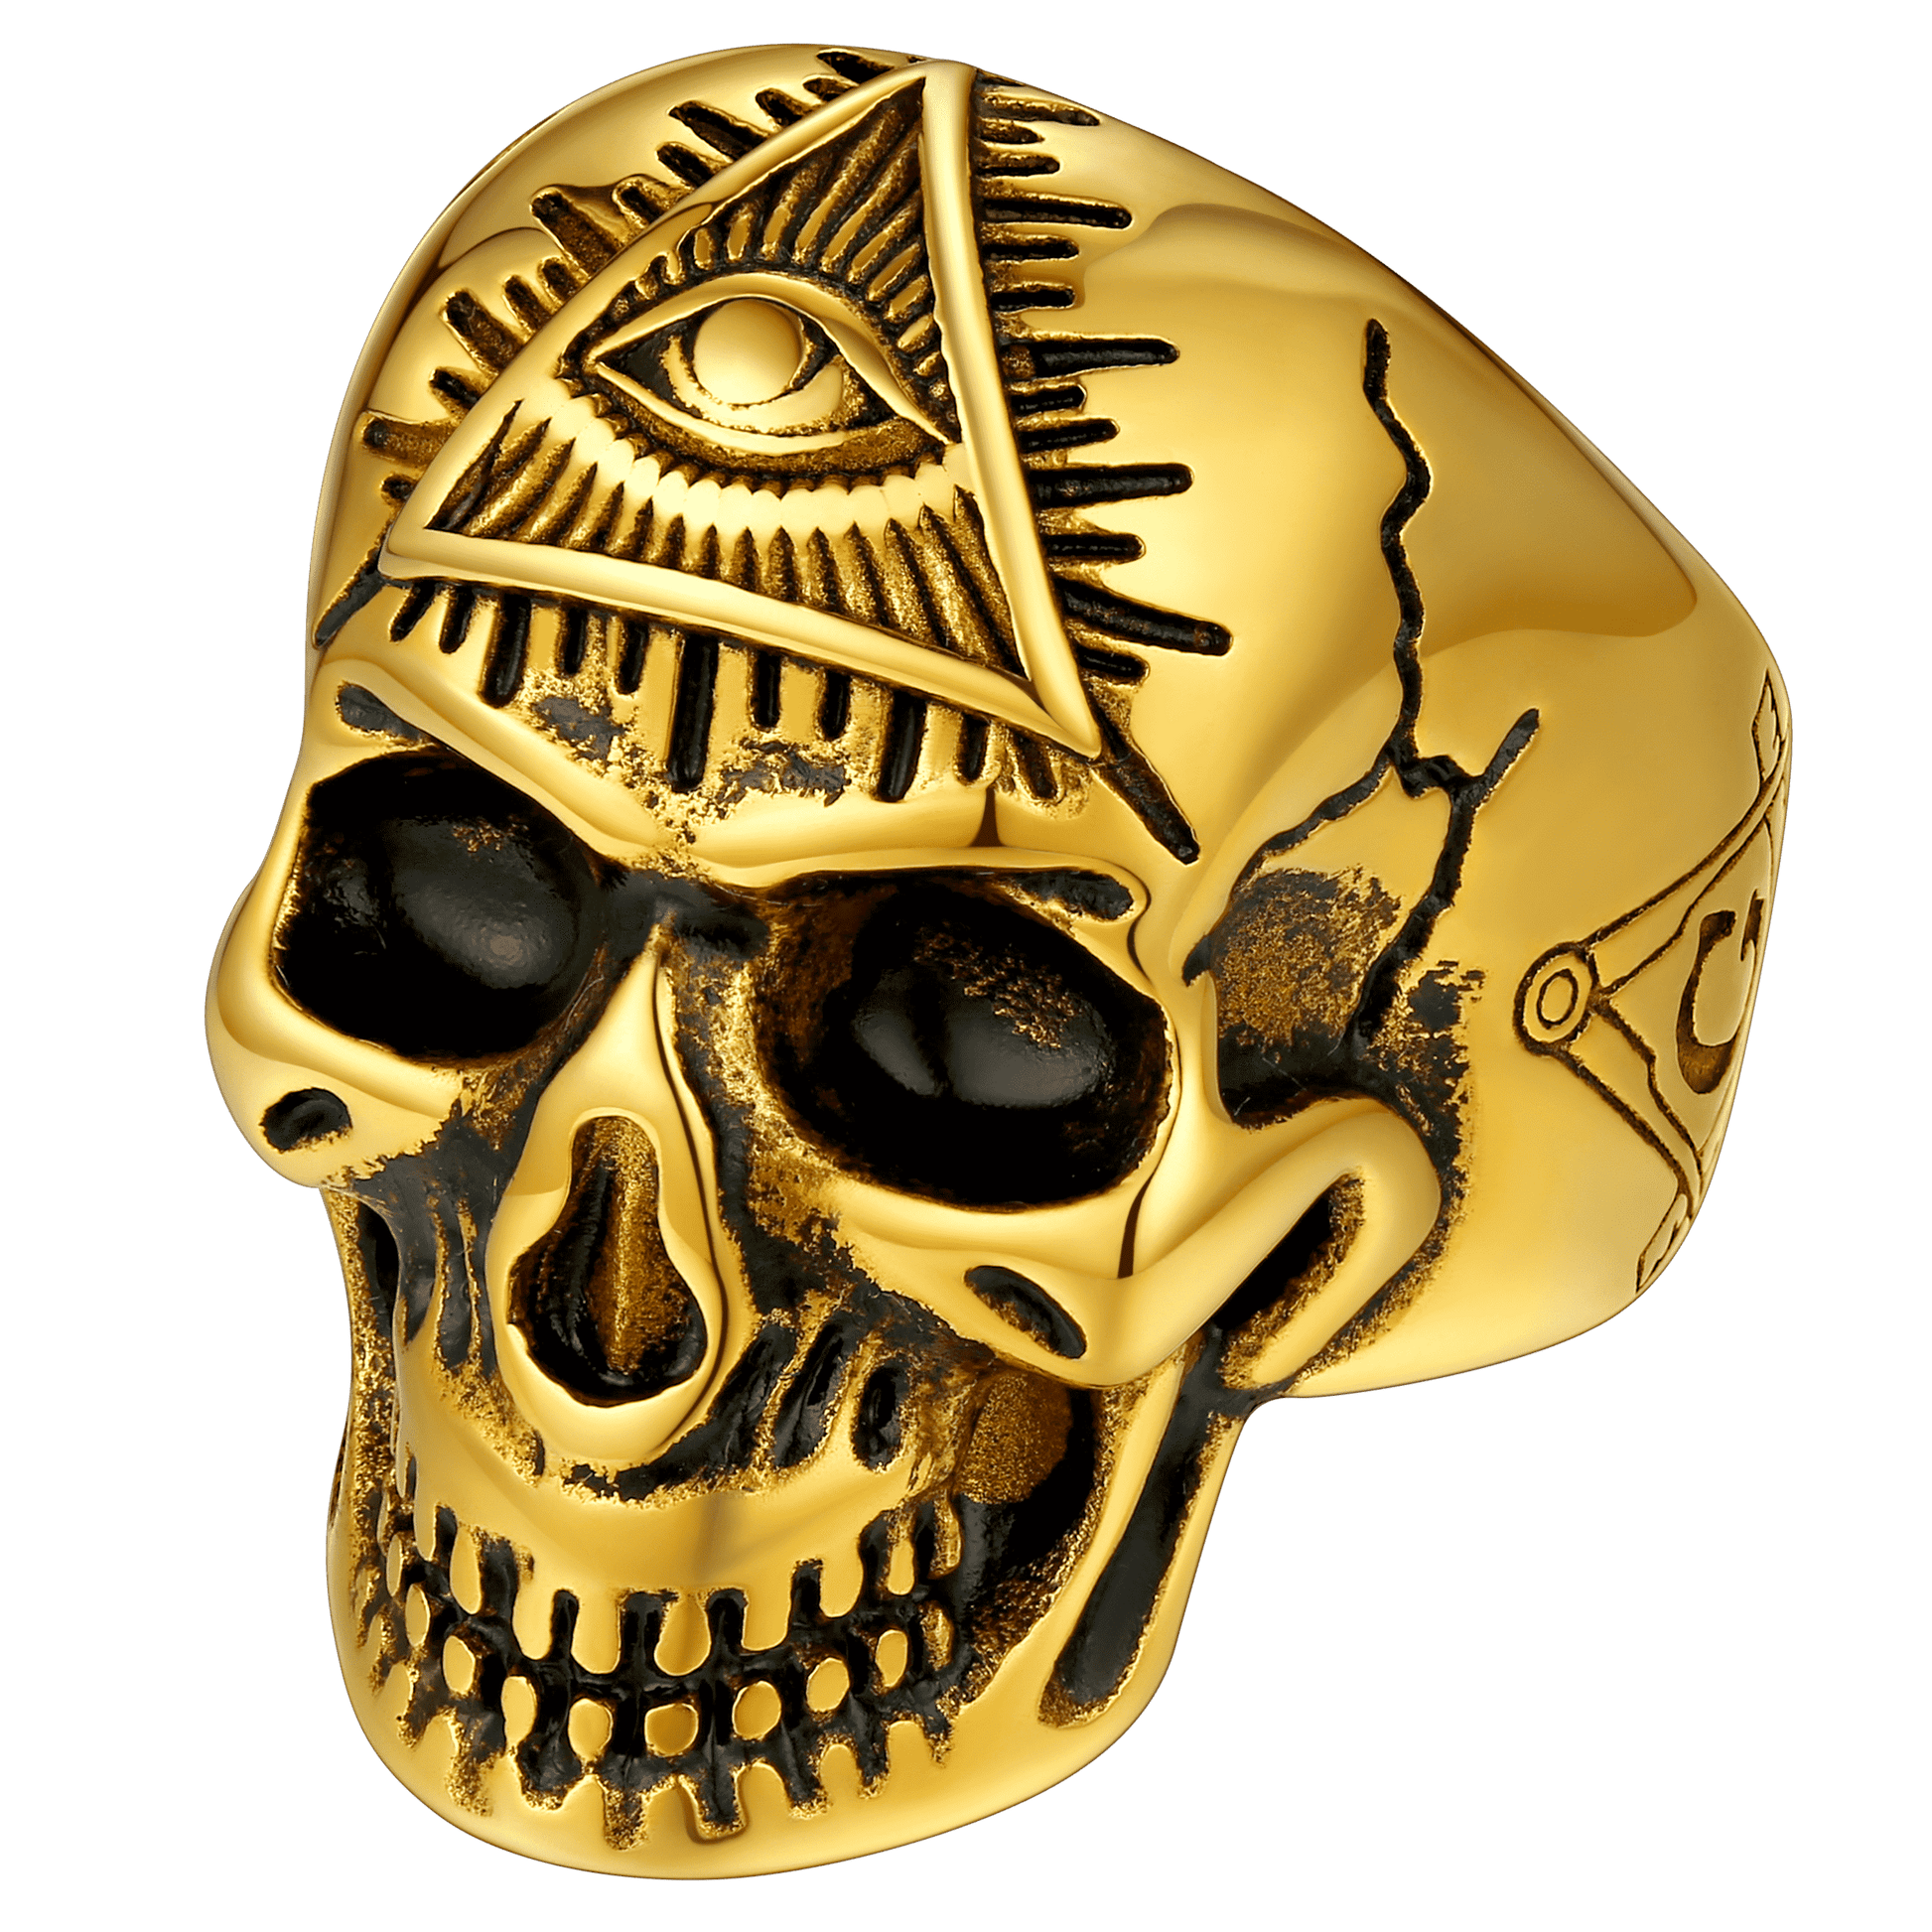 FaithHeart Ancient Eye of Providence Skull Ring For Men FaithHeart